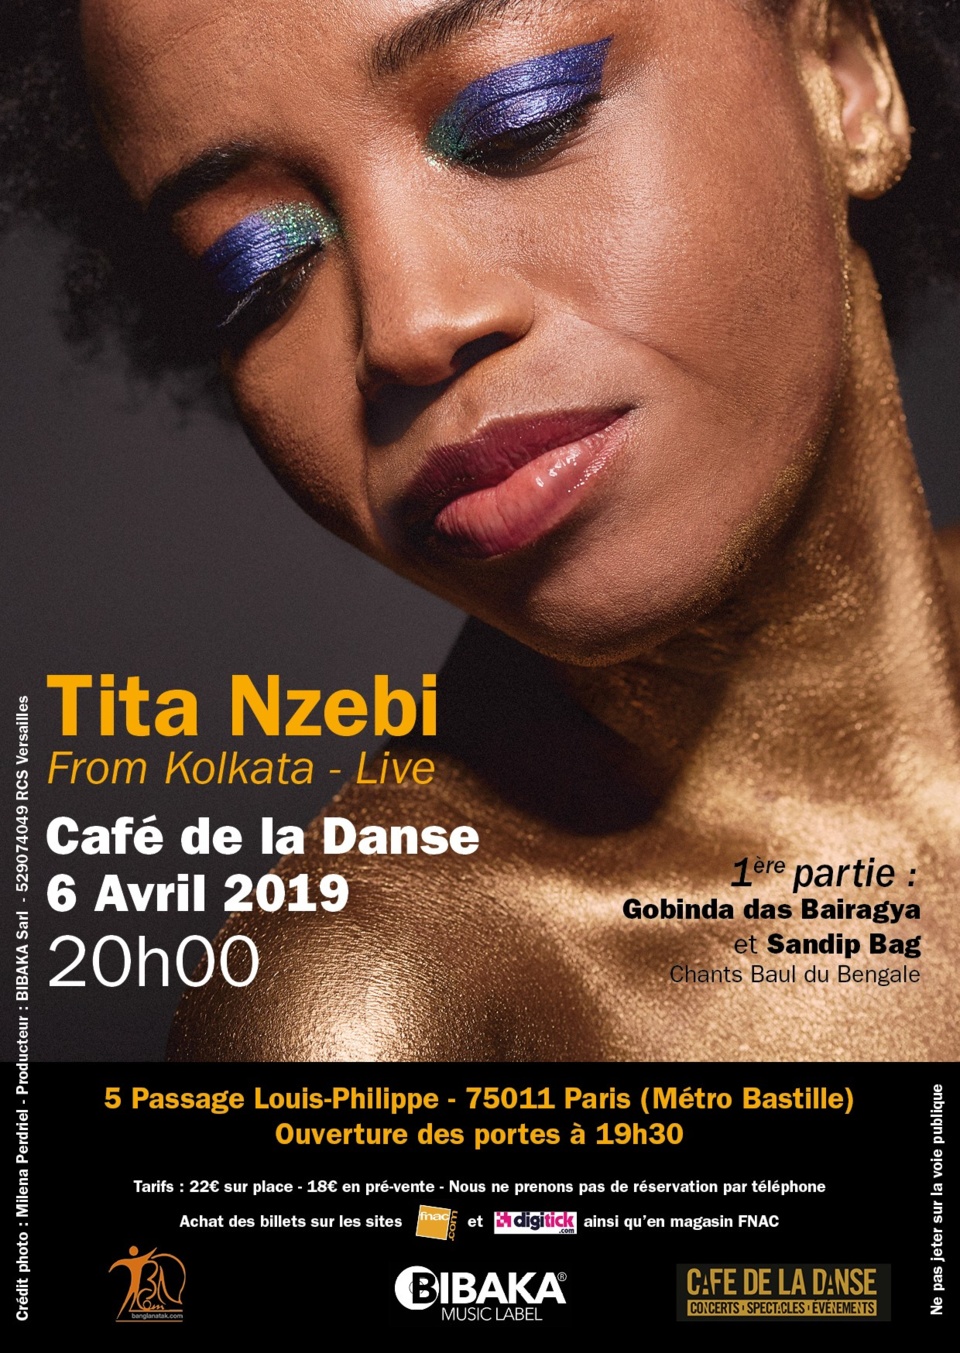 Une invitation au voyage : retour de la chanteuse Tita Nzebi au Café de la Danse le 6 avril